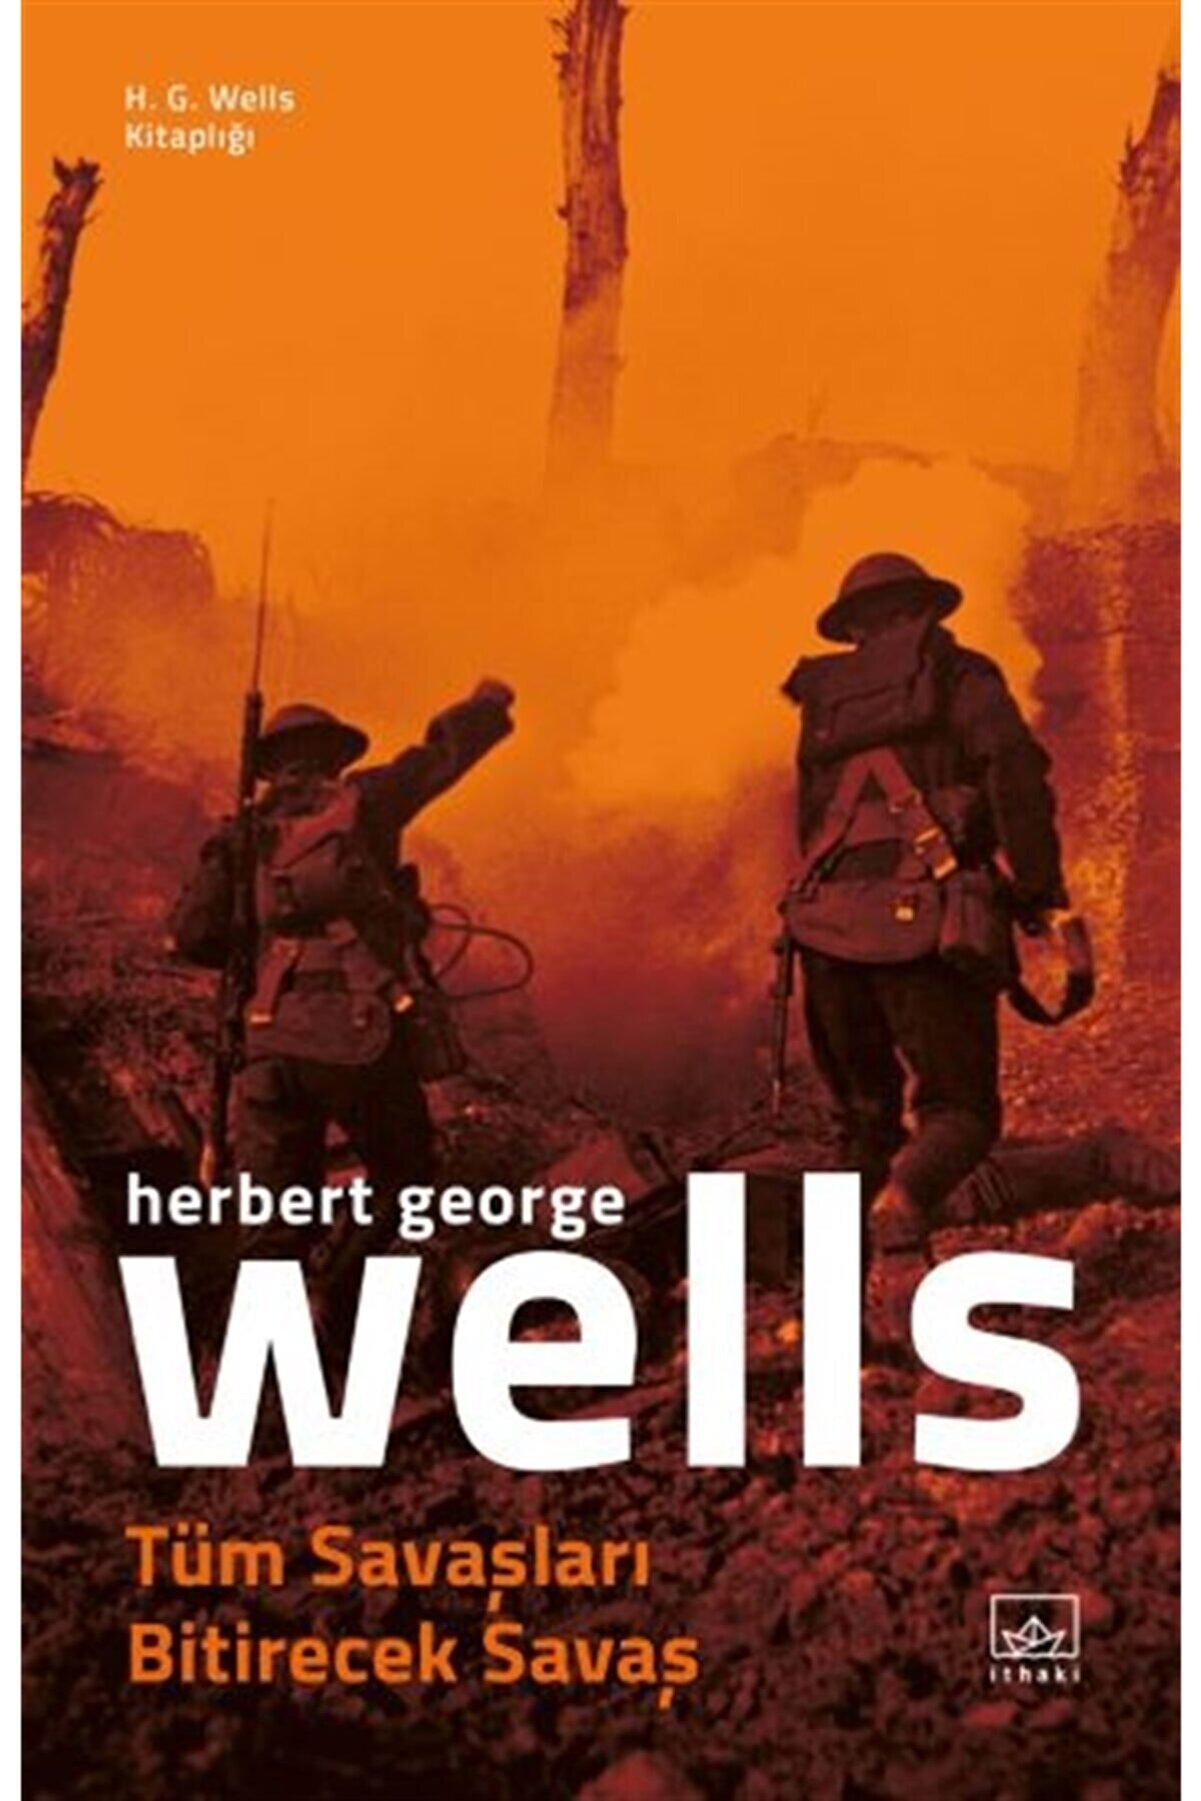 İthaki Yayınları Tüm Savaşları Bitirecek Savaş - H.g. Wells Kitaplığı